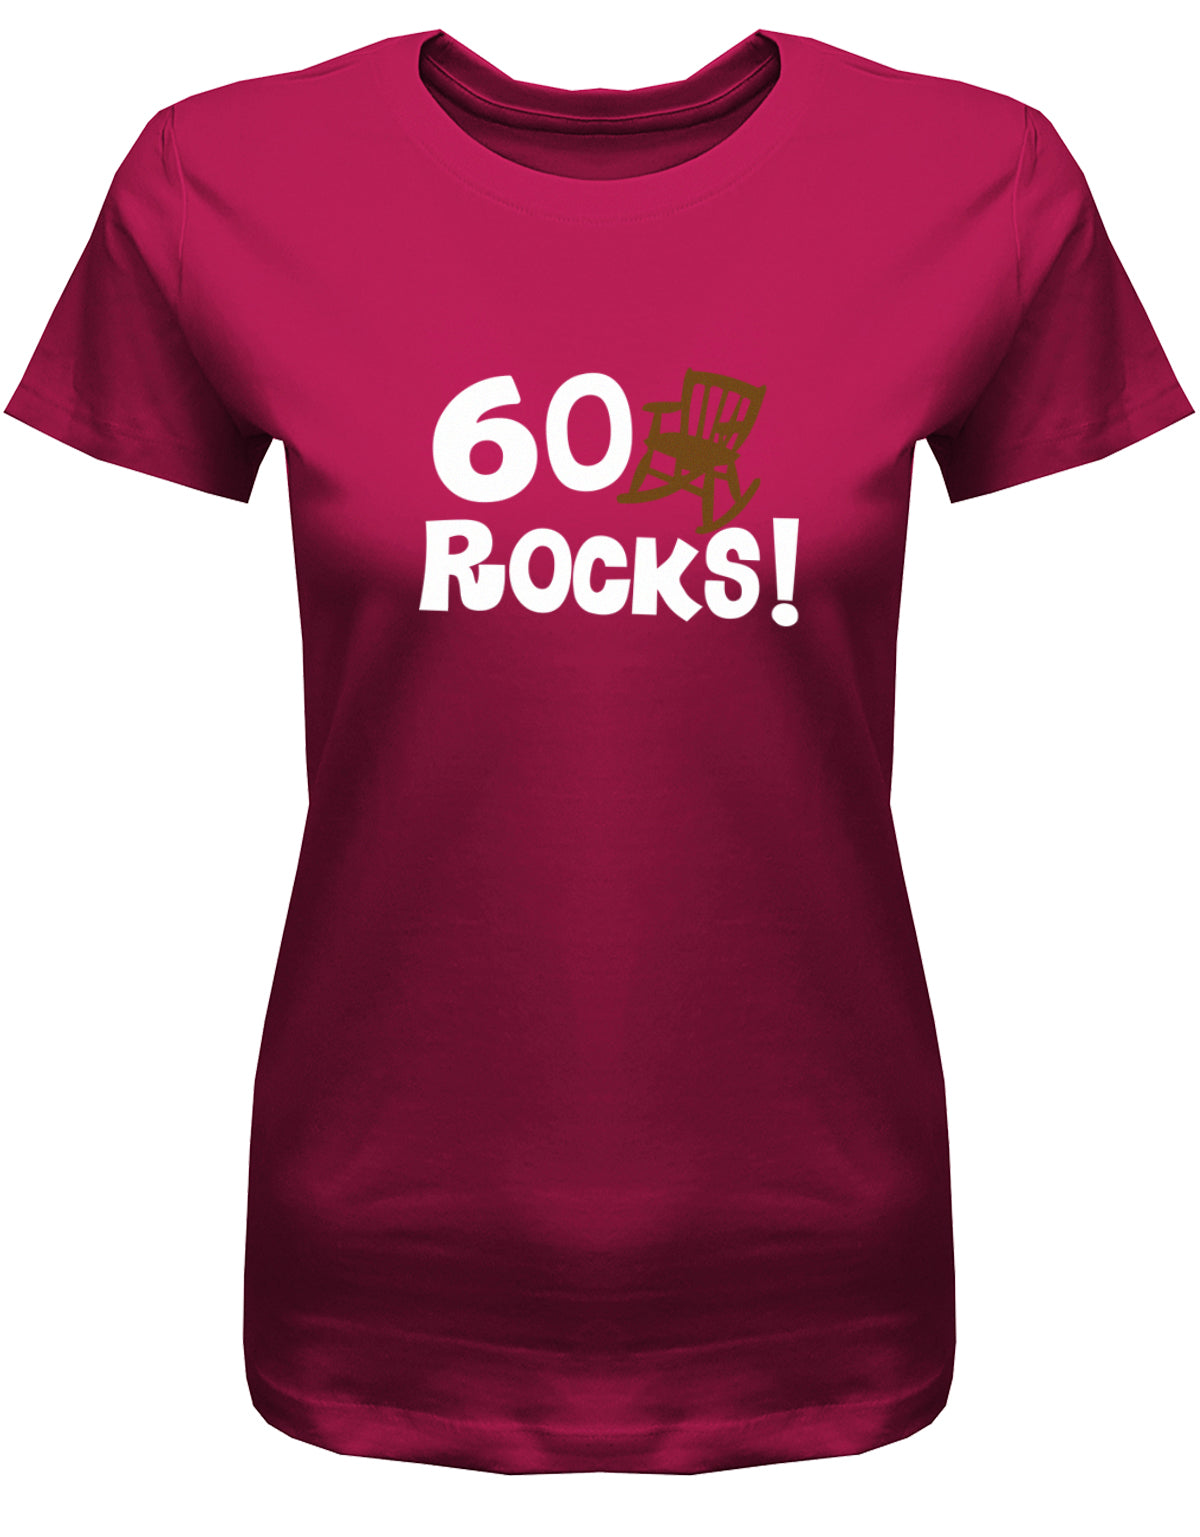 Lustiges T-Shirt zum 60 Geburtstag für die Frau Bedruckt mit 60 Rocks Schaukelstuhl. Sorbet